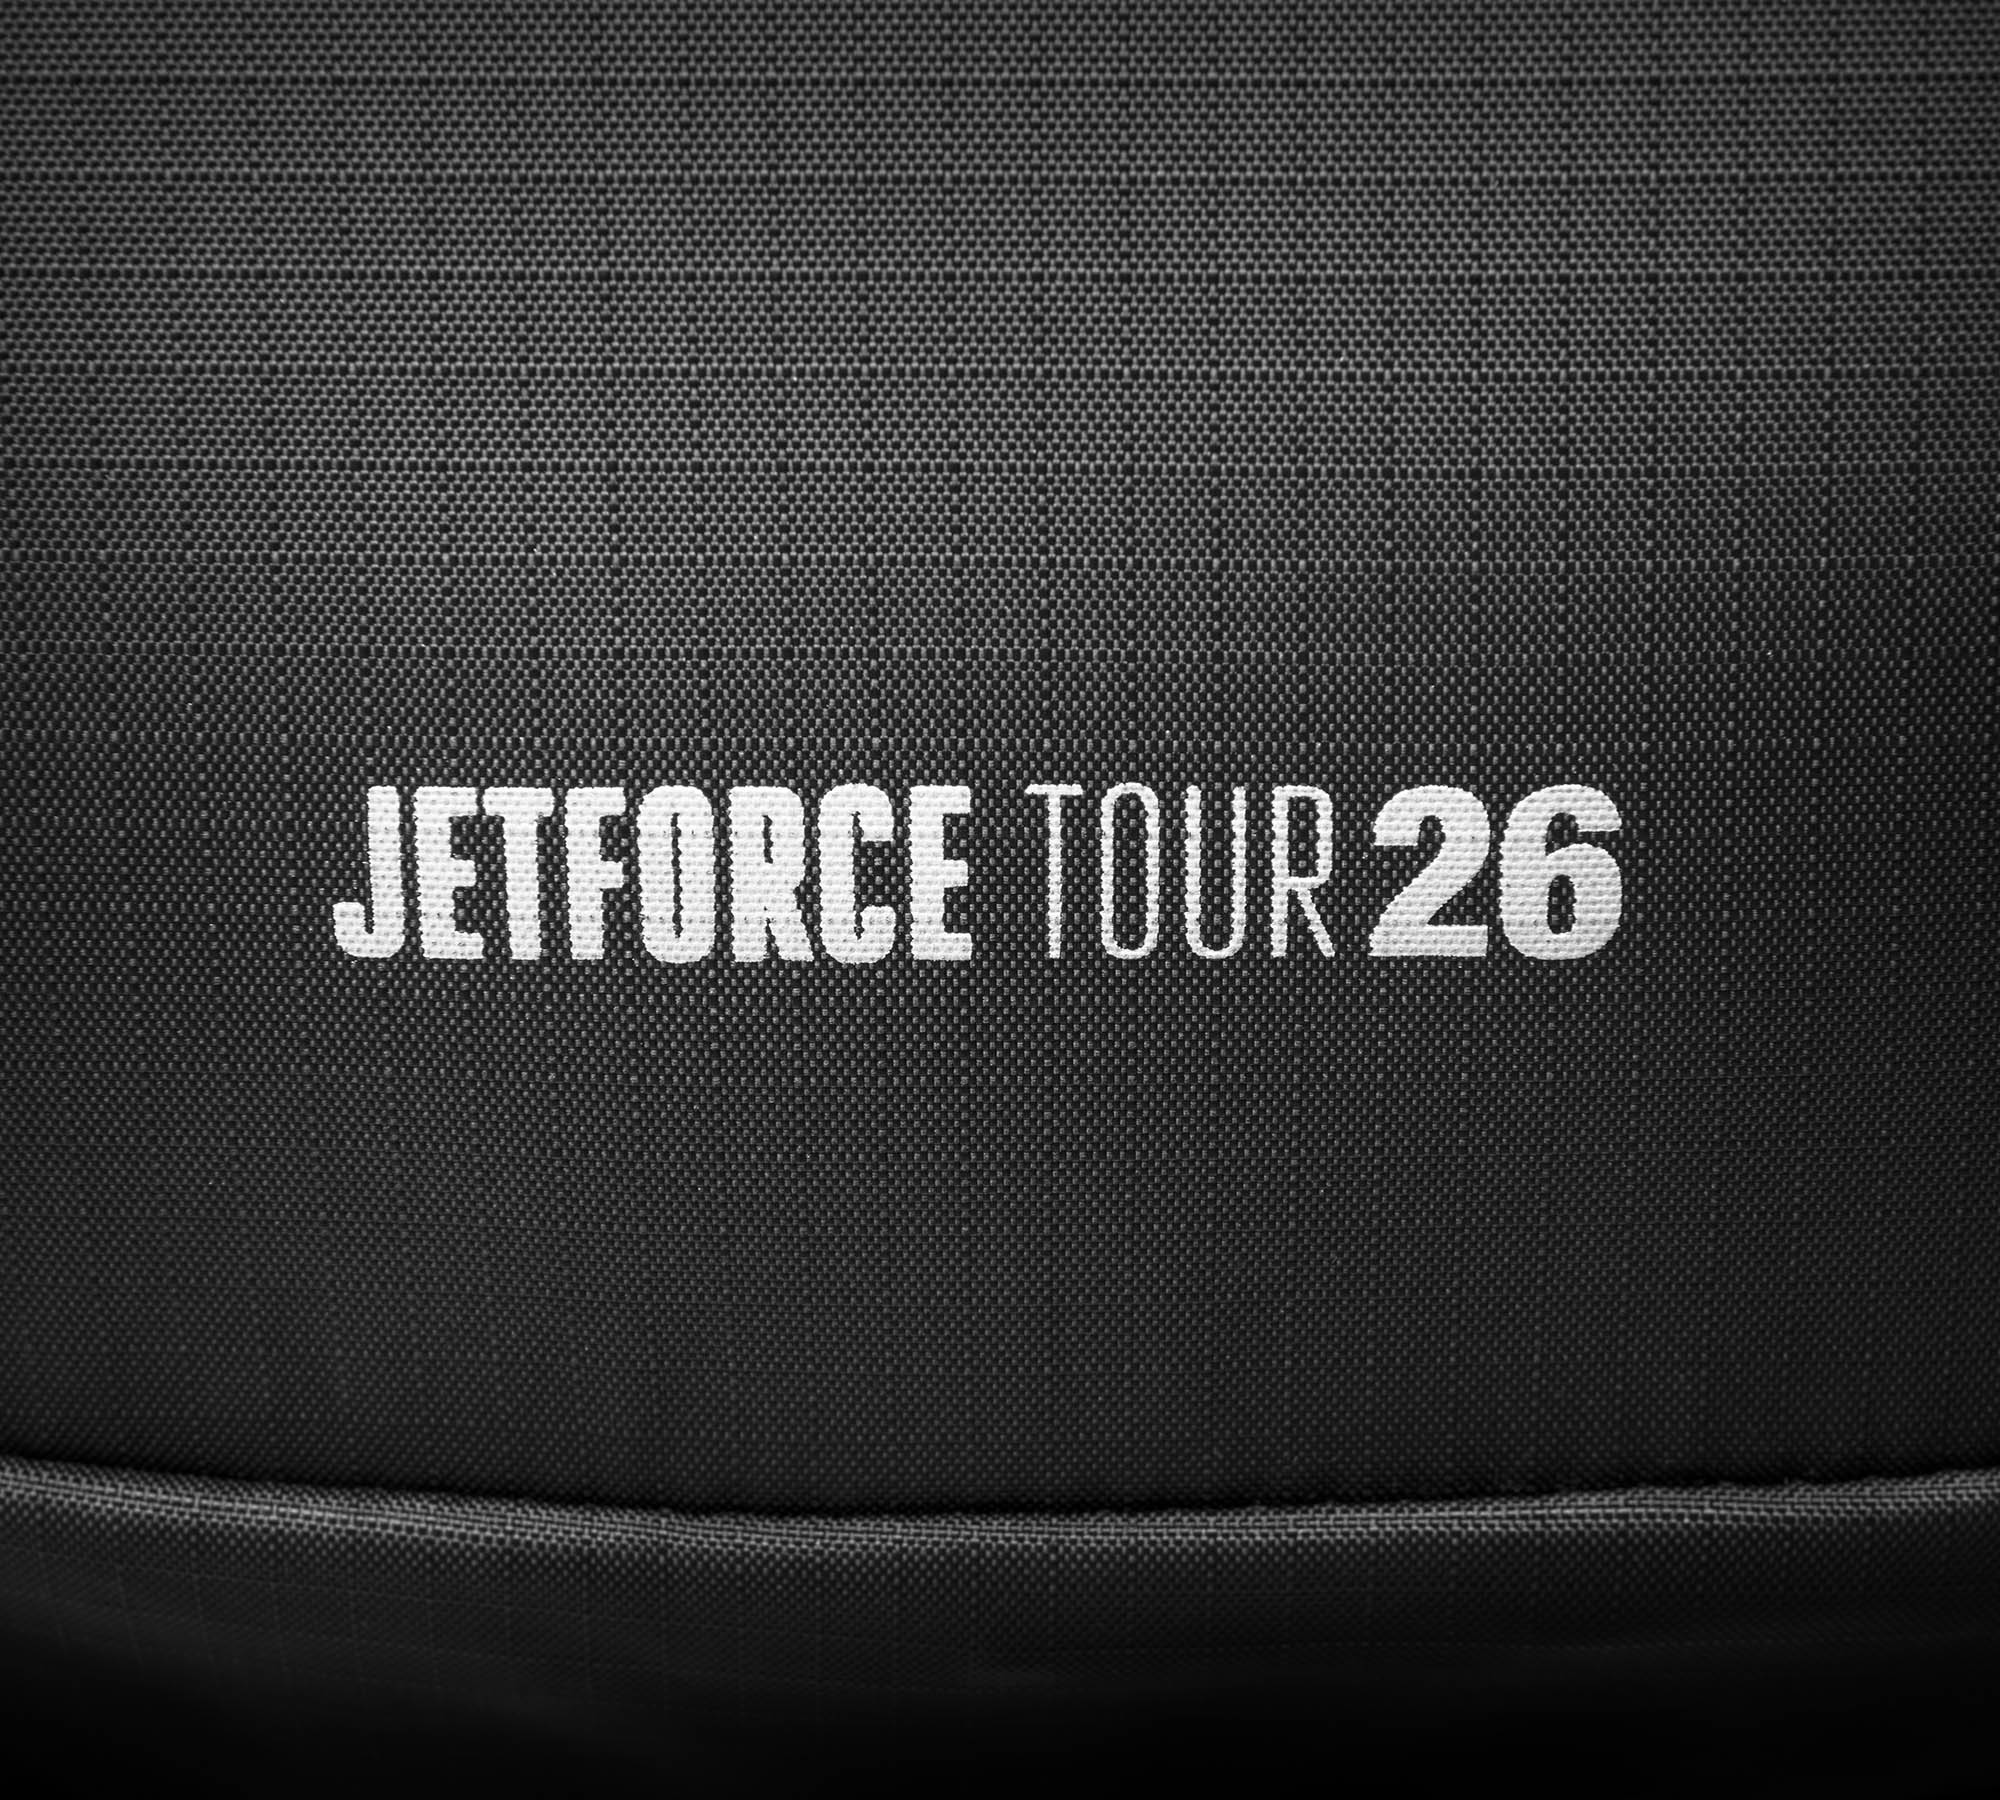 Jetforce Tour